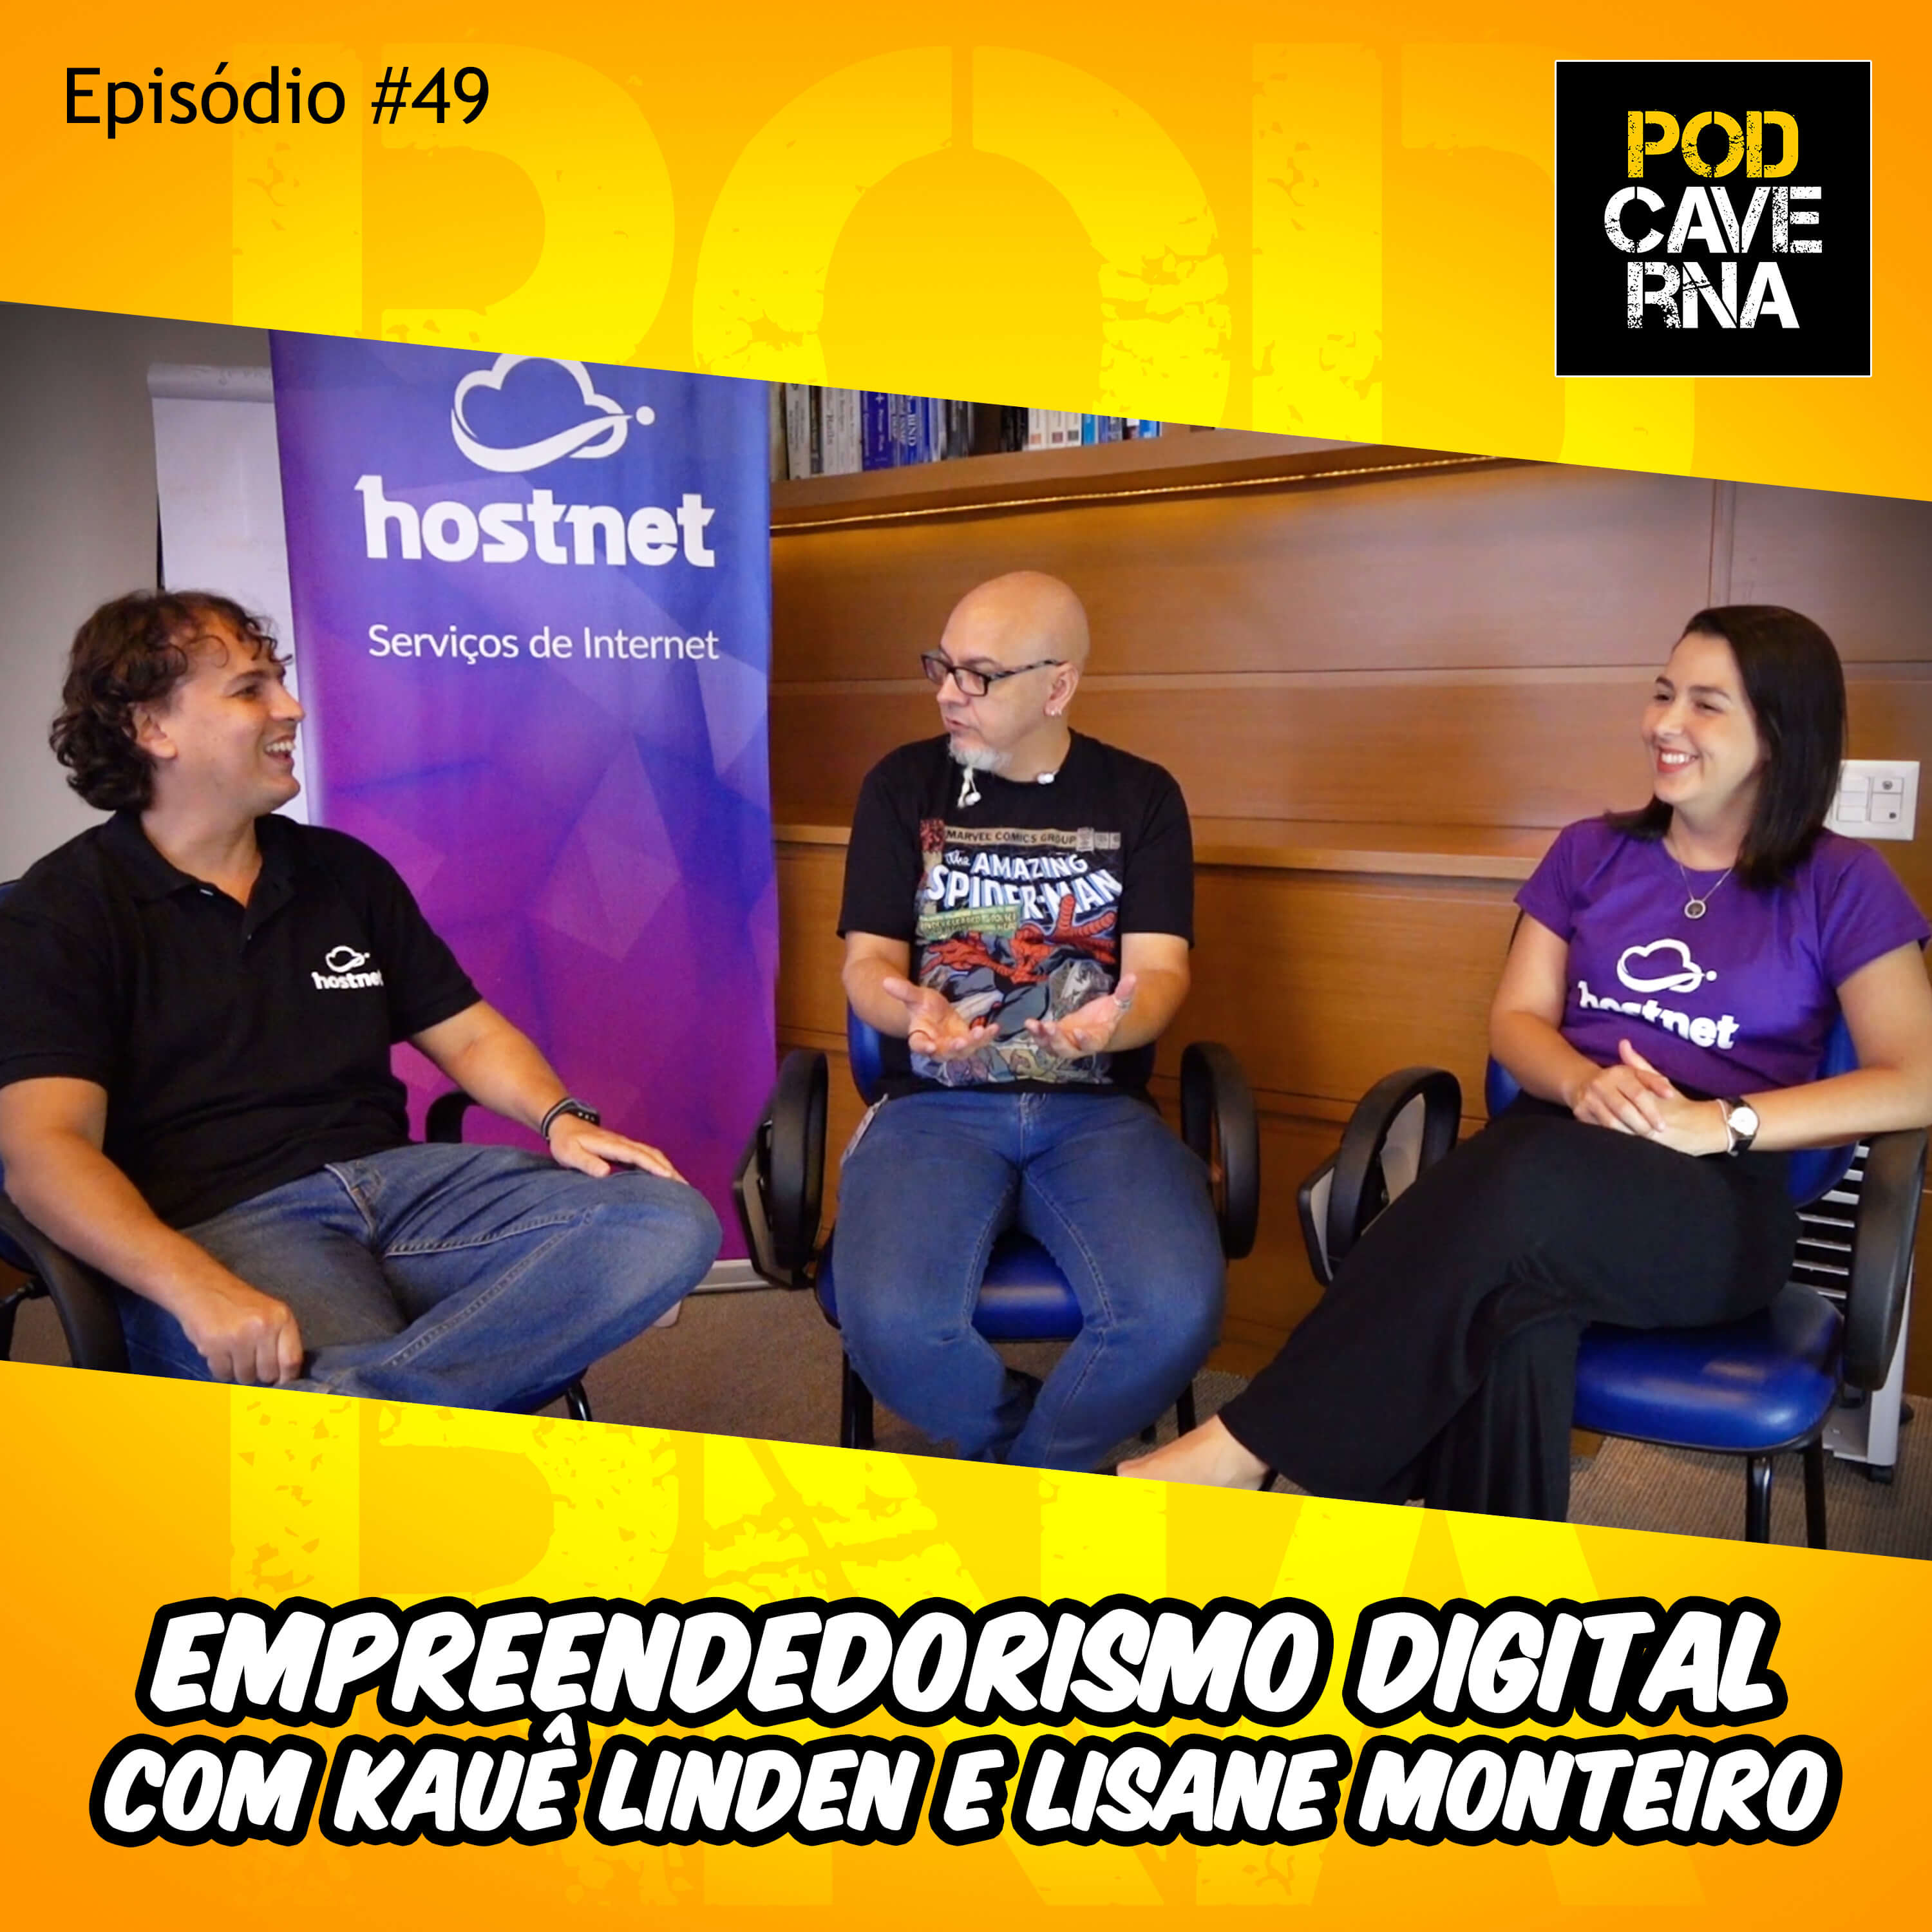 Empreendedorismo Digital com Kauê Linden e Lisane Monteiro